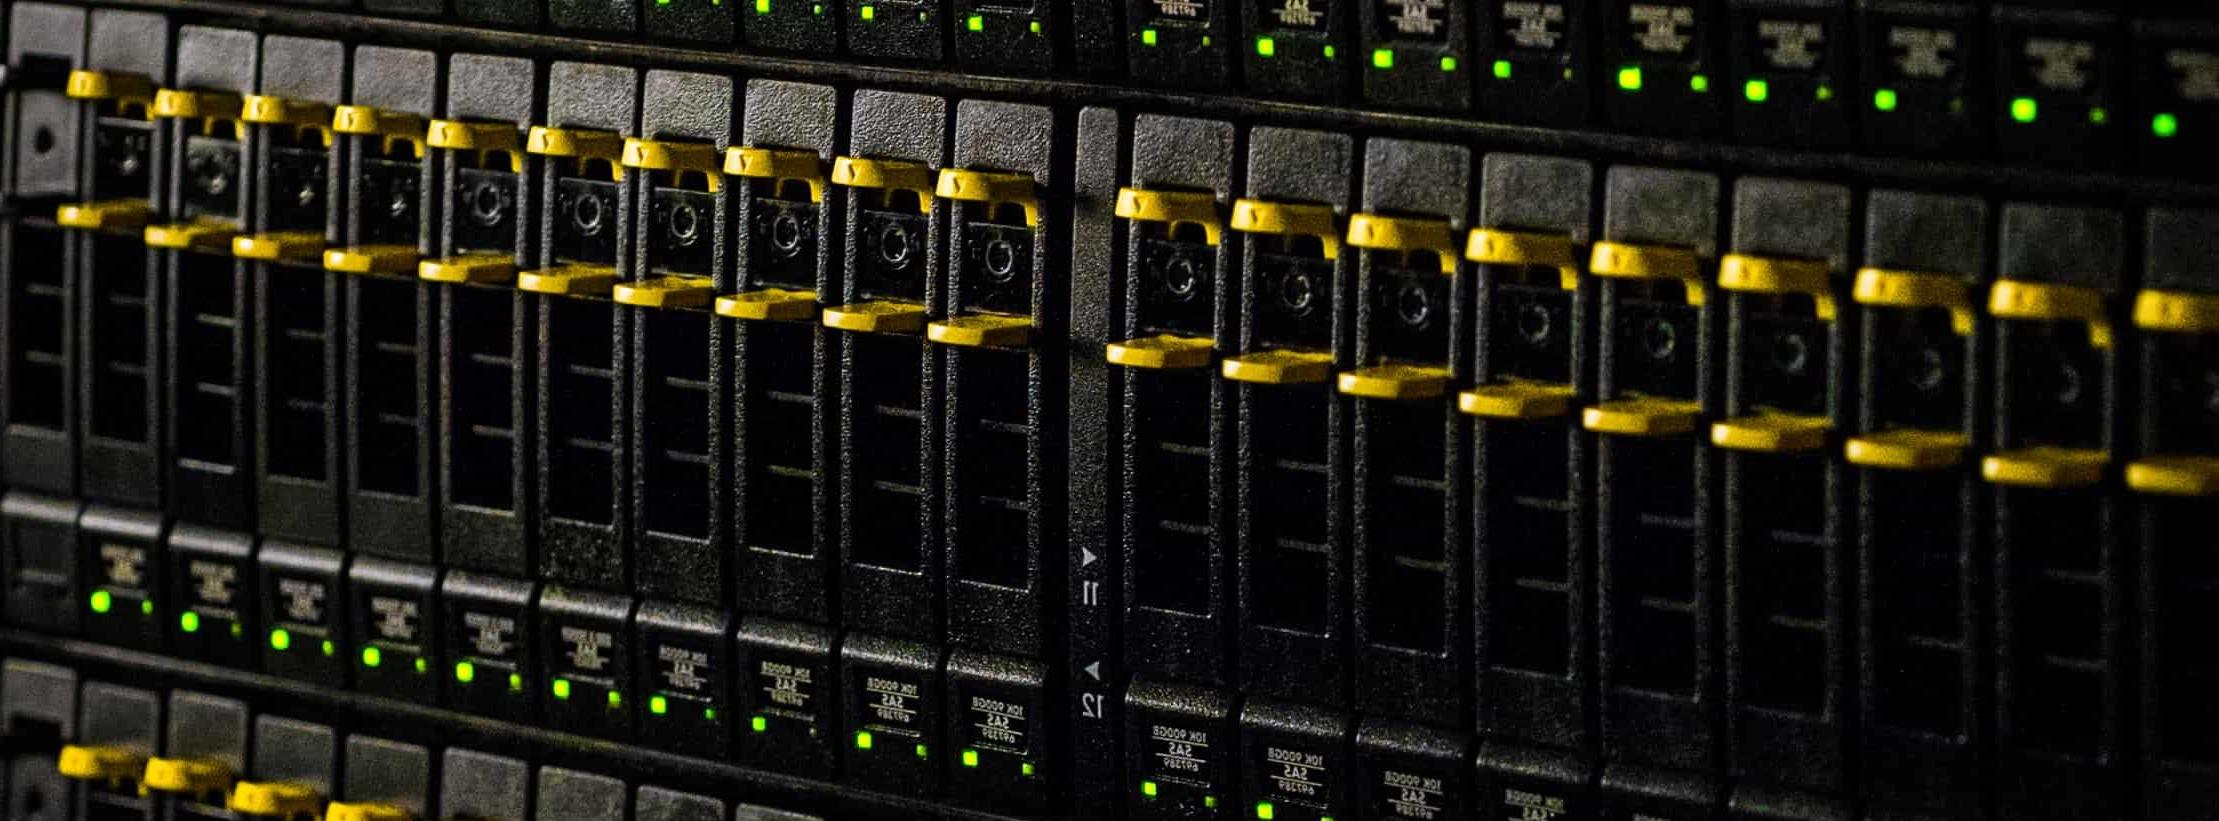 Close-up of a server rack